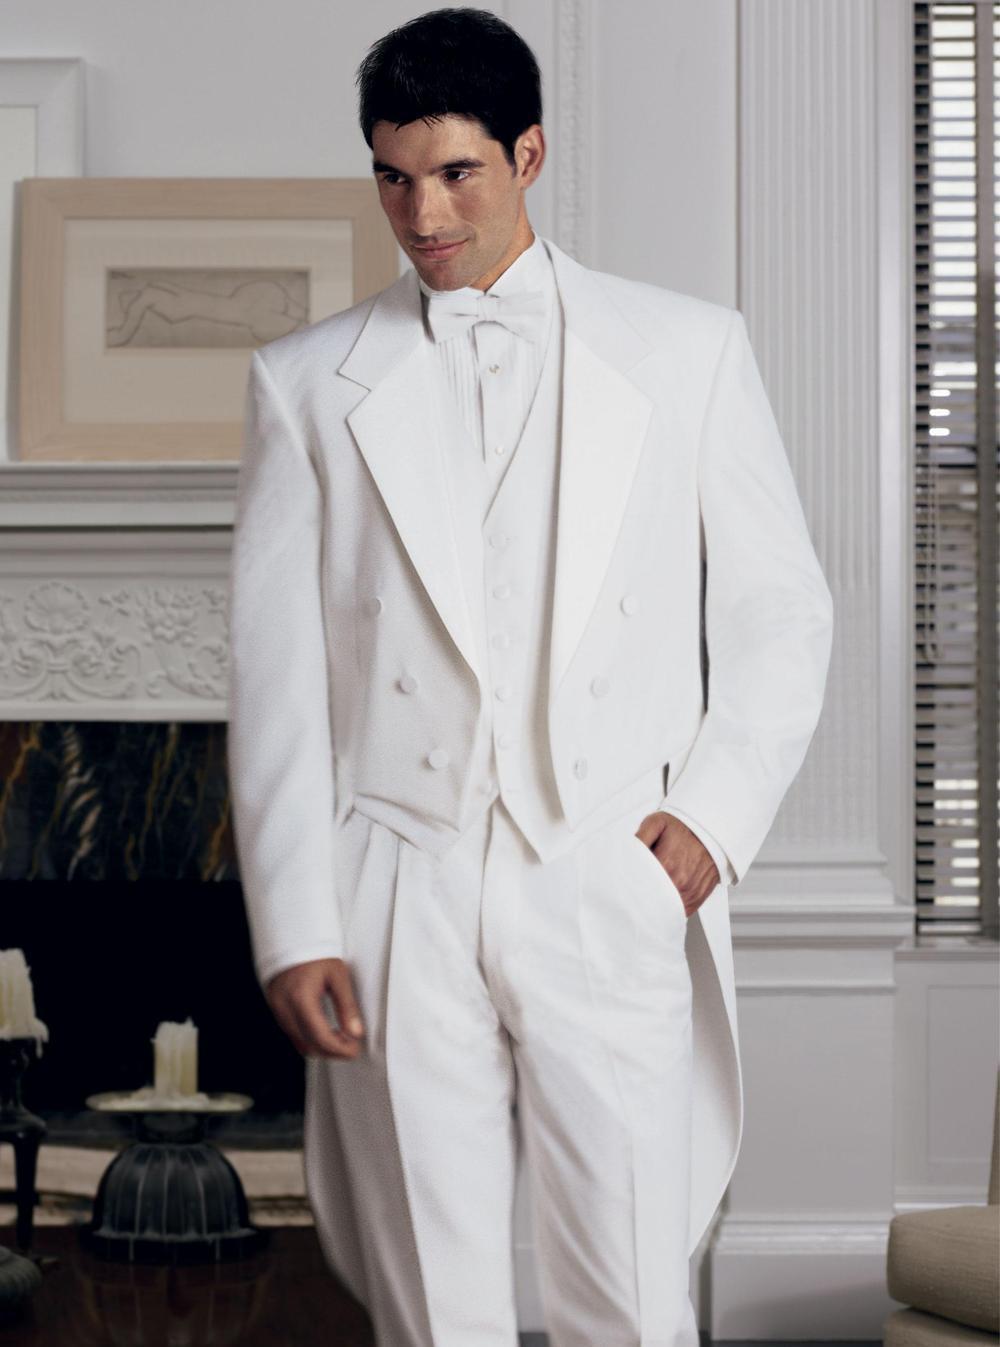 New Arrival Classic White Men Tailcoat Notched Lapel Wedding Suits For Men Men Suits Trim Fit 3 Pieces Formal Groomsmen Suits